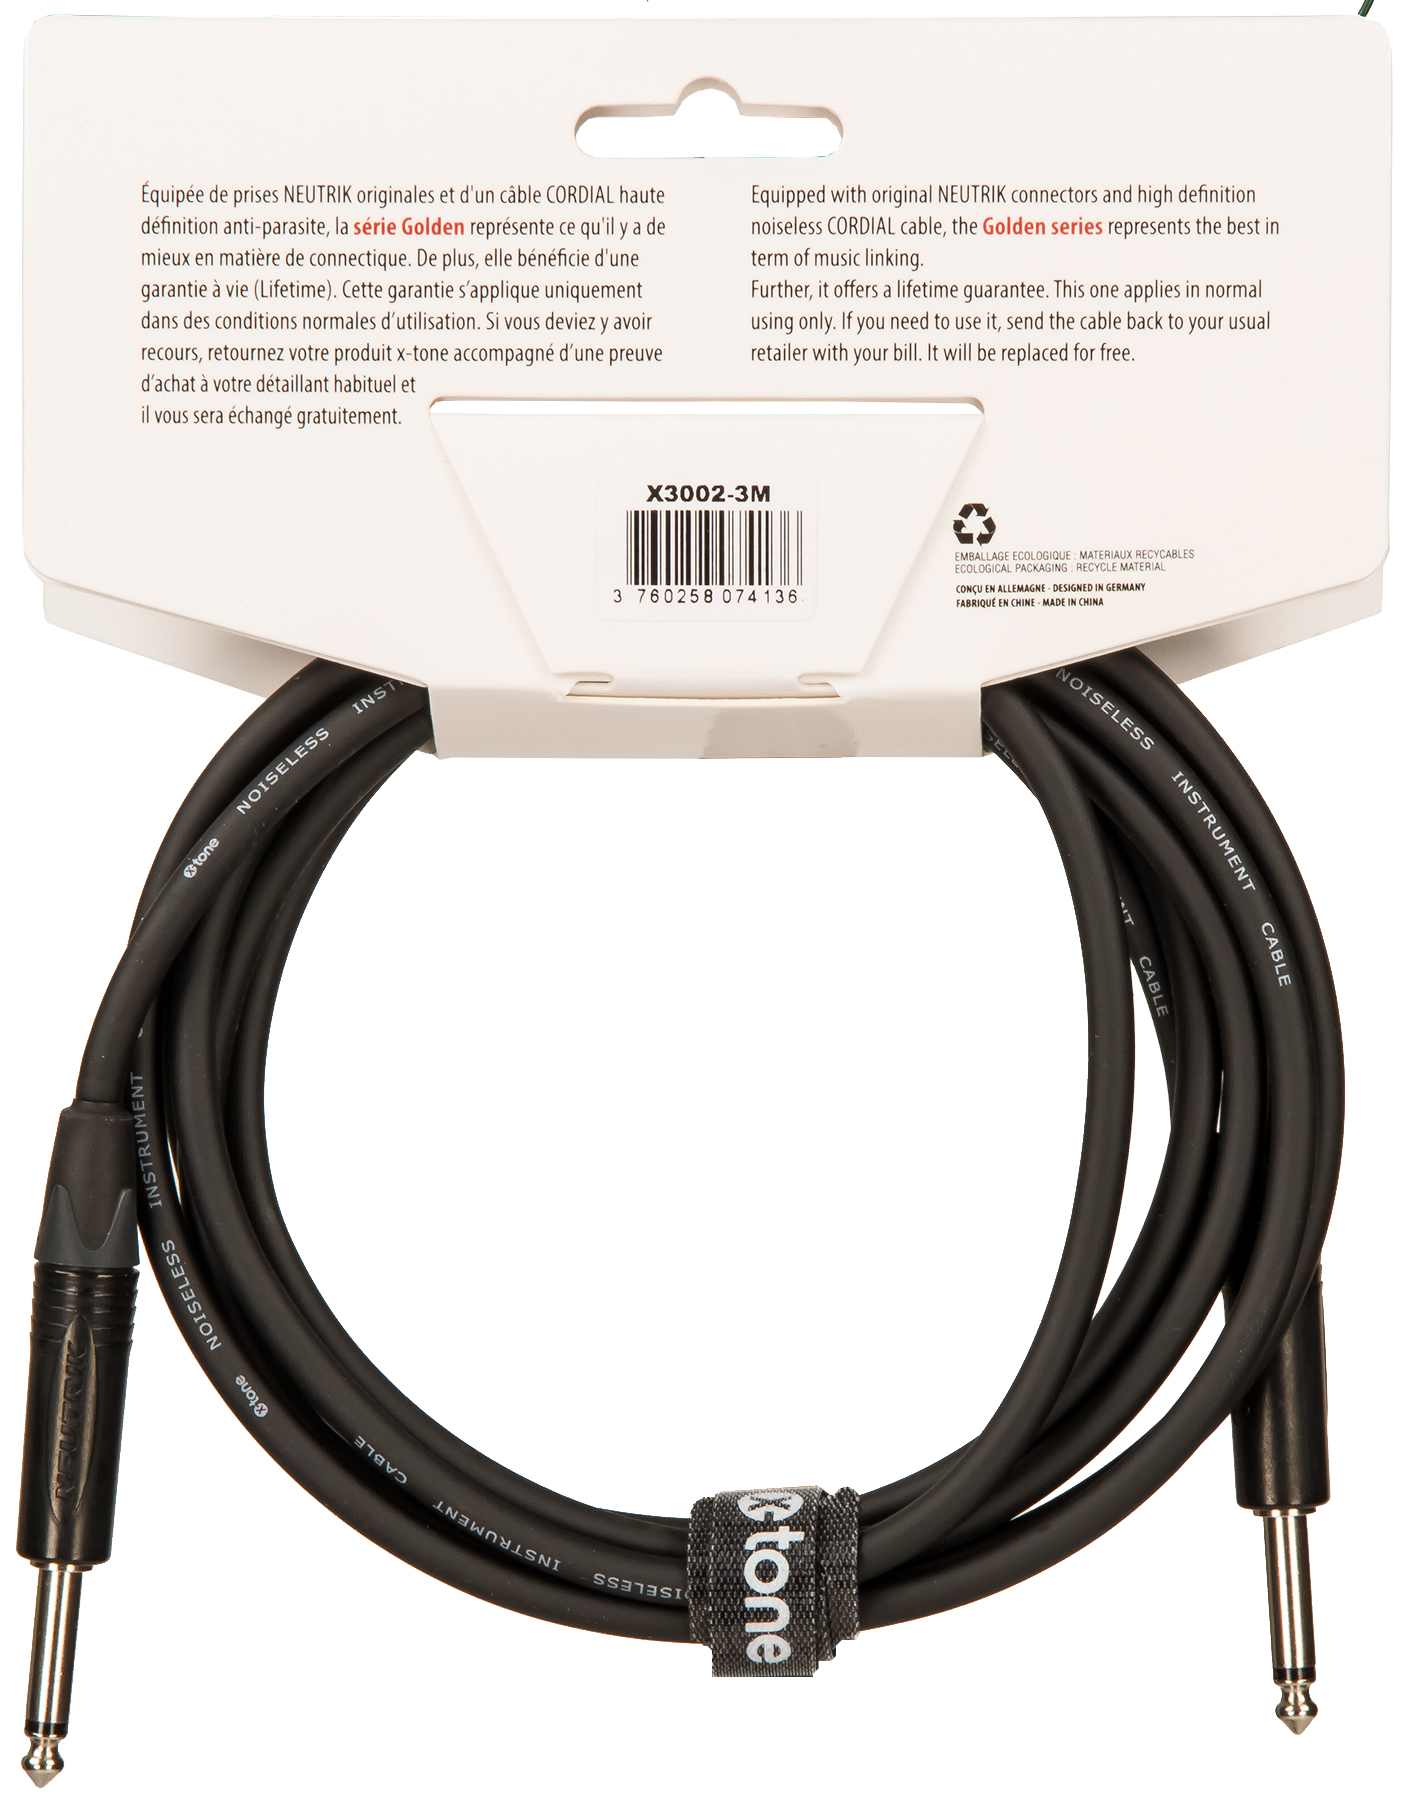 X-tone X3002-3m Instrument Cable Golden Series Neutrik Droit/droit 3m - Cable - Variation 1